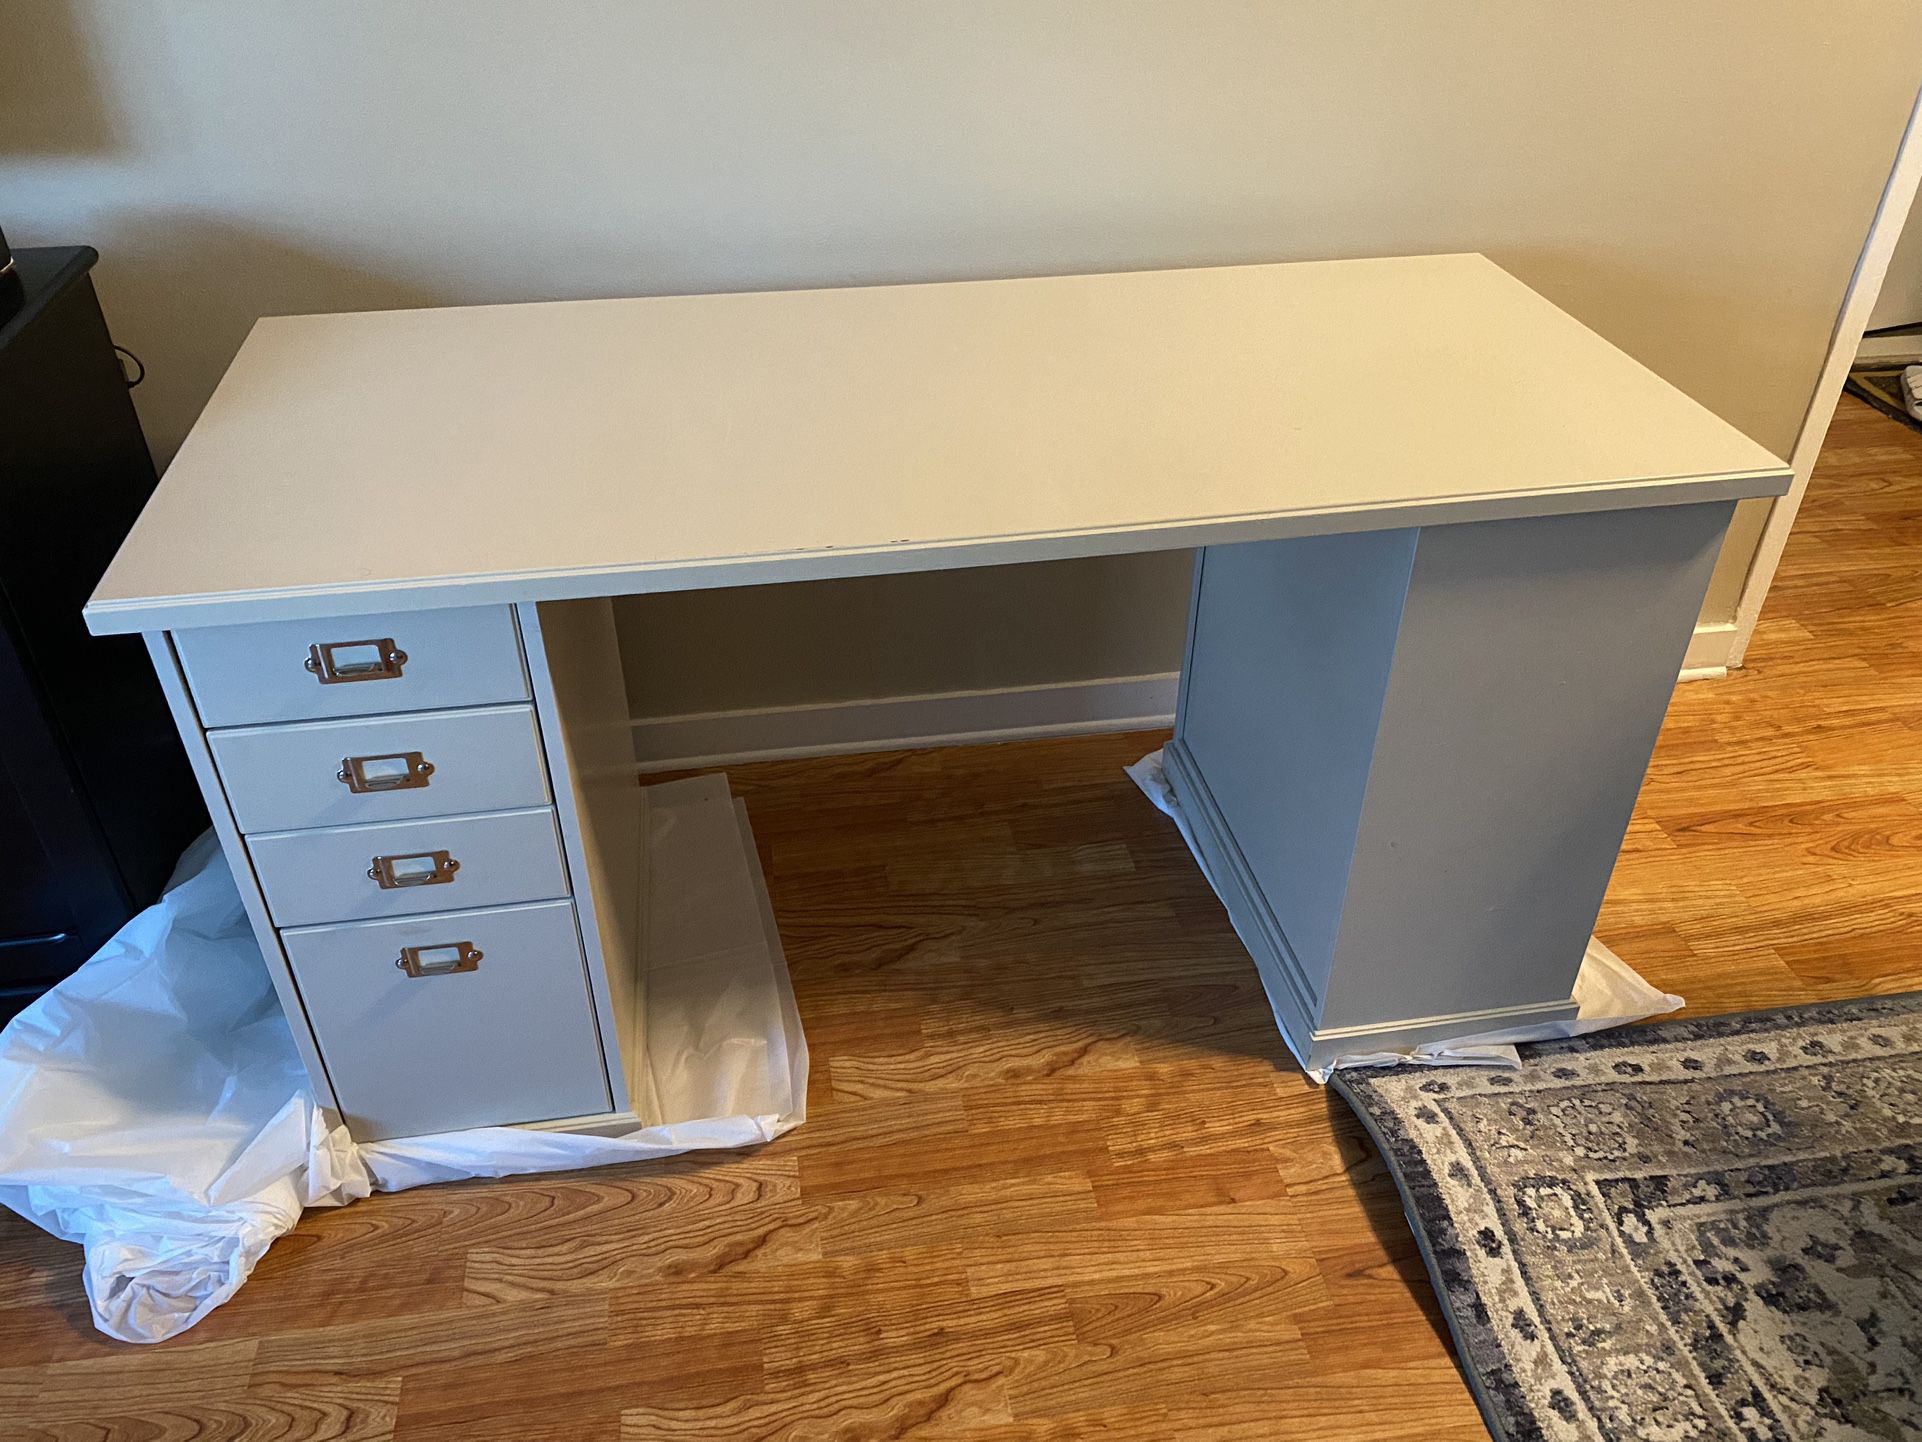 Ikea vebjorn Desk